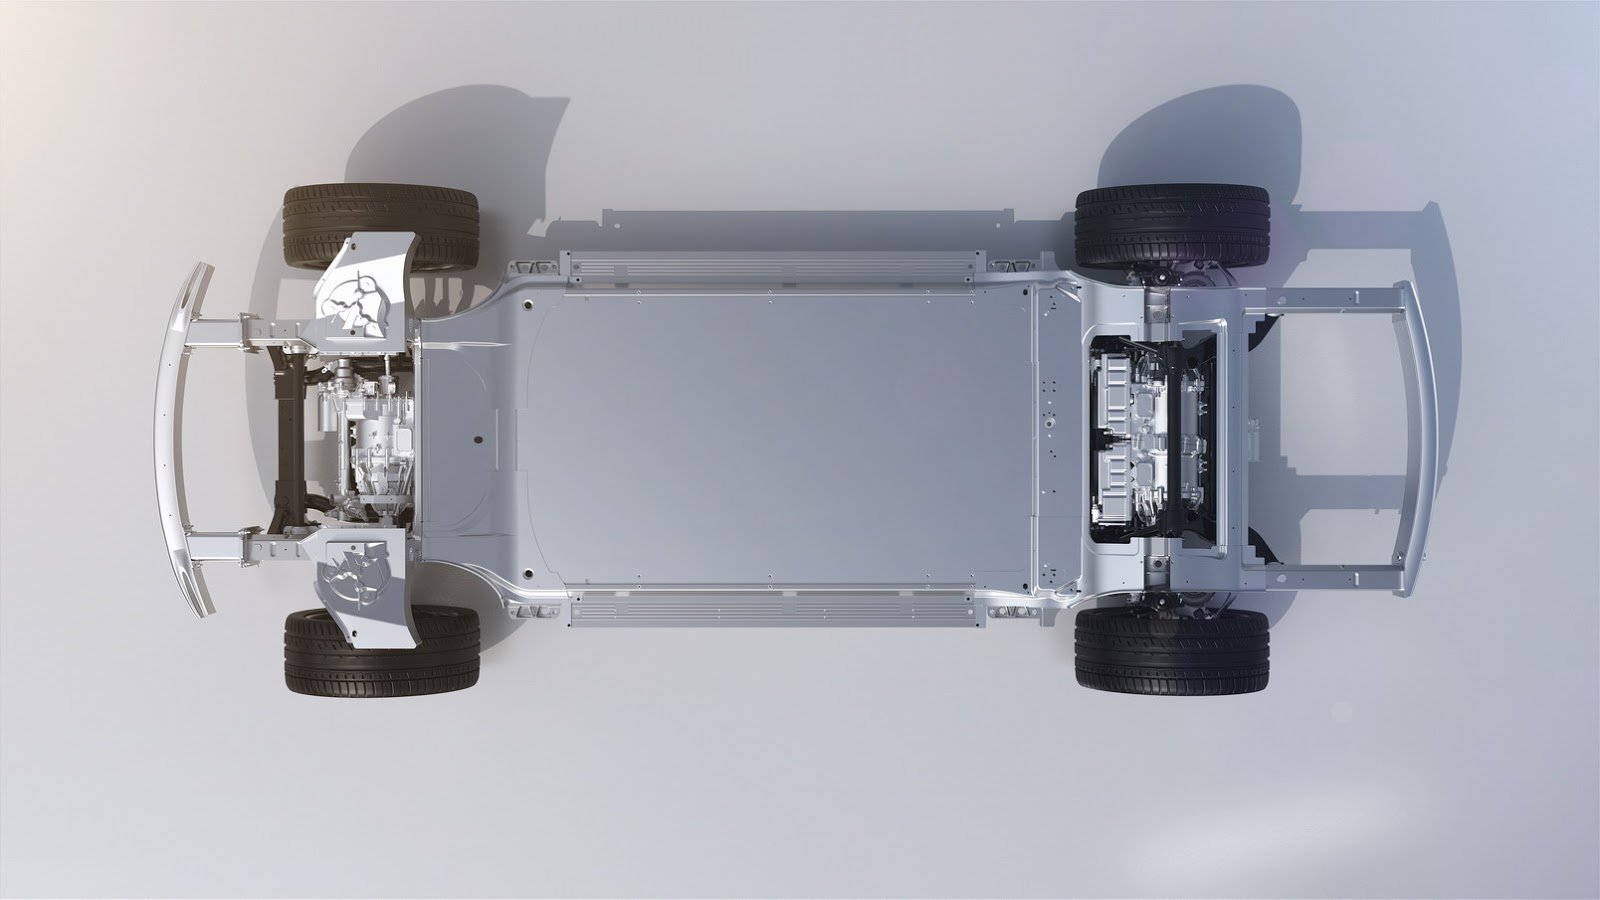 Faraday Future FF 91 může být novým vládcem elektromobilů.